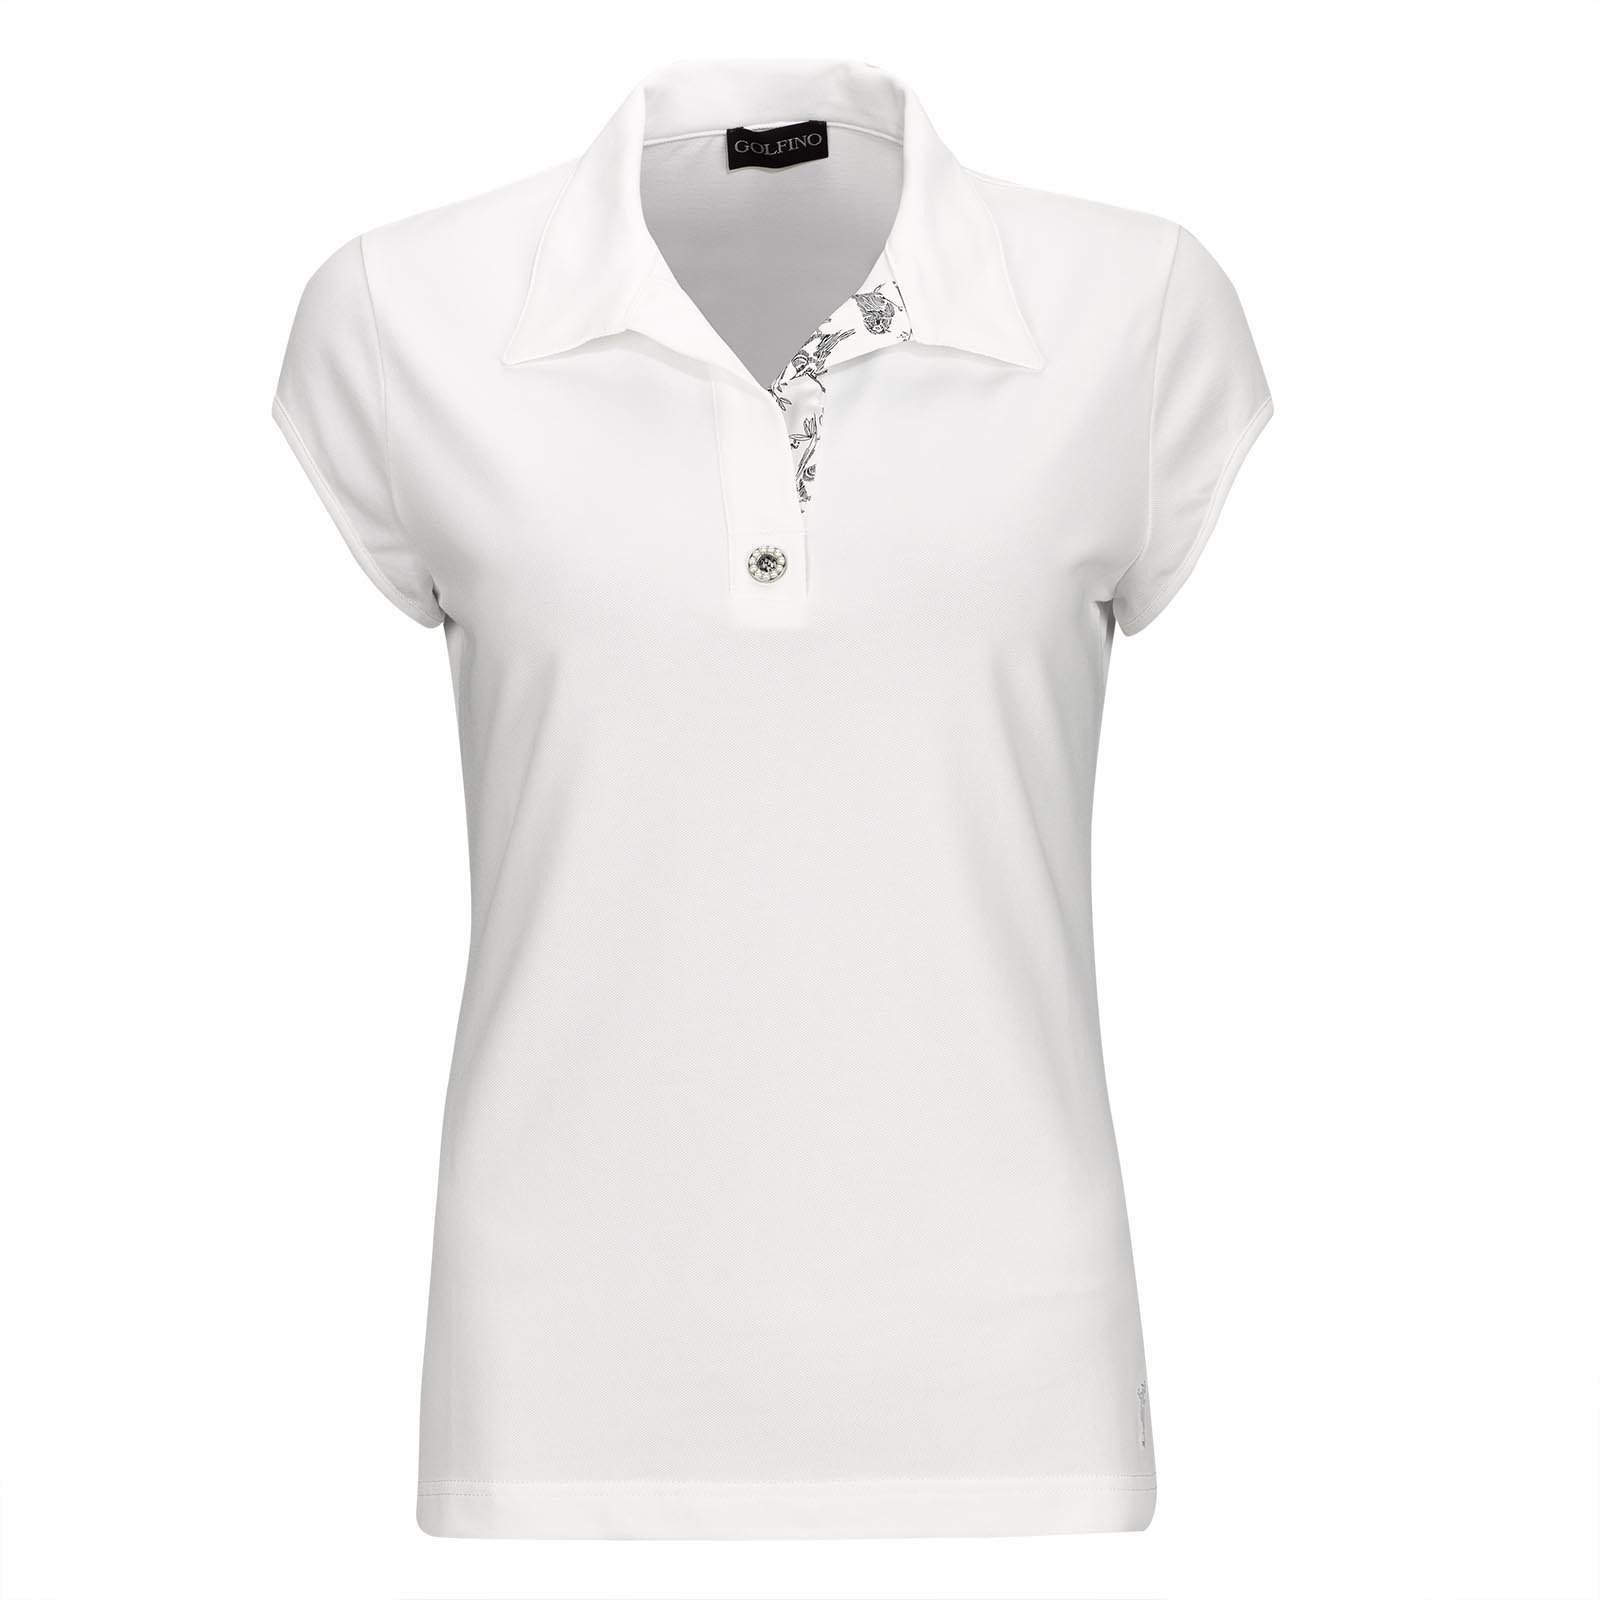 Pikétröja Golfino Pearls Cap Sleeve Womens Polo Shirt White 40